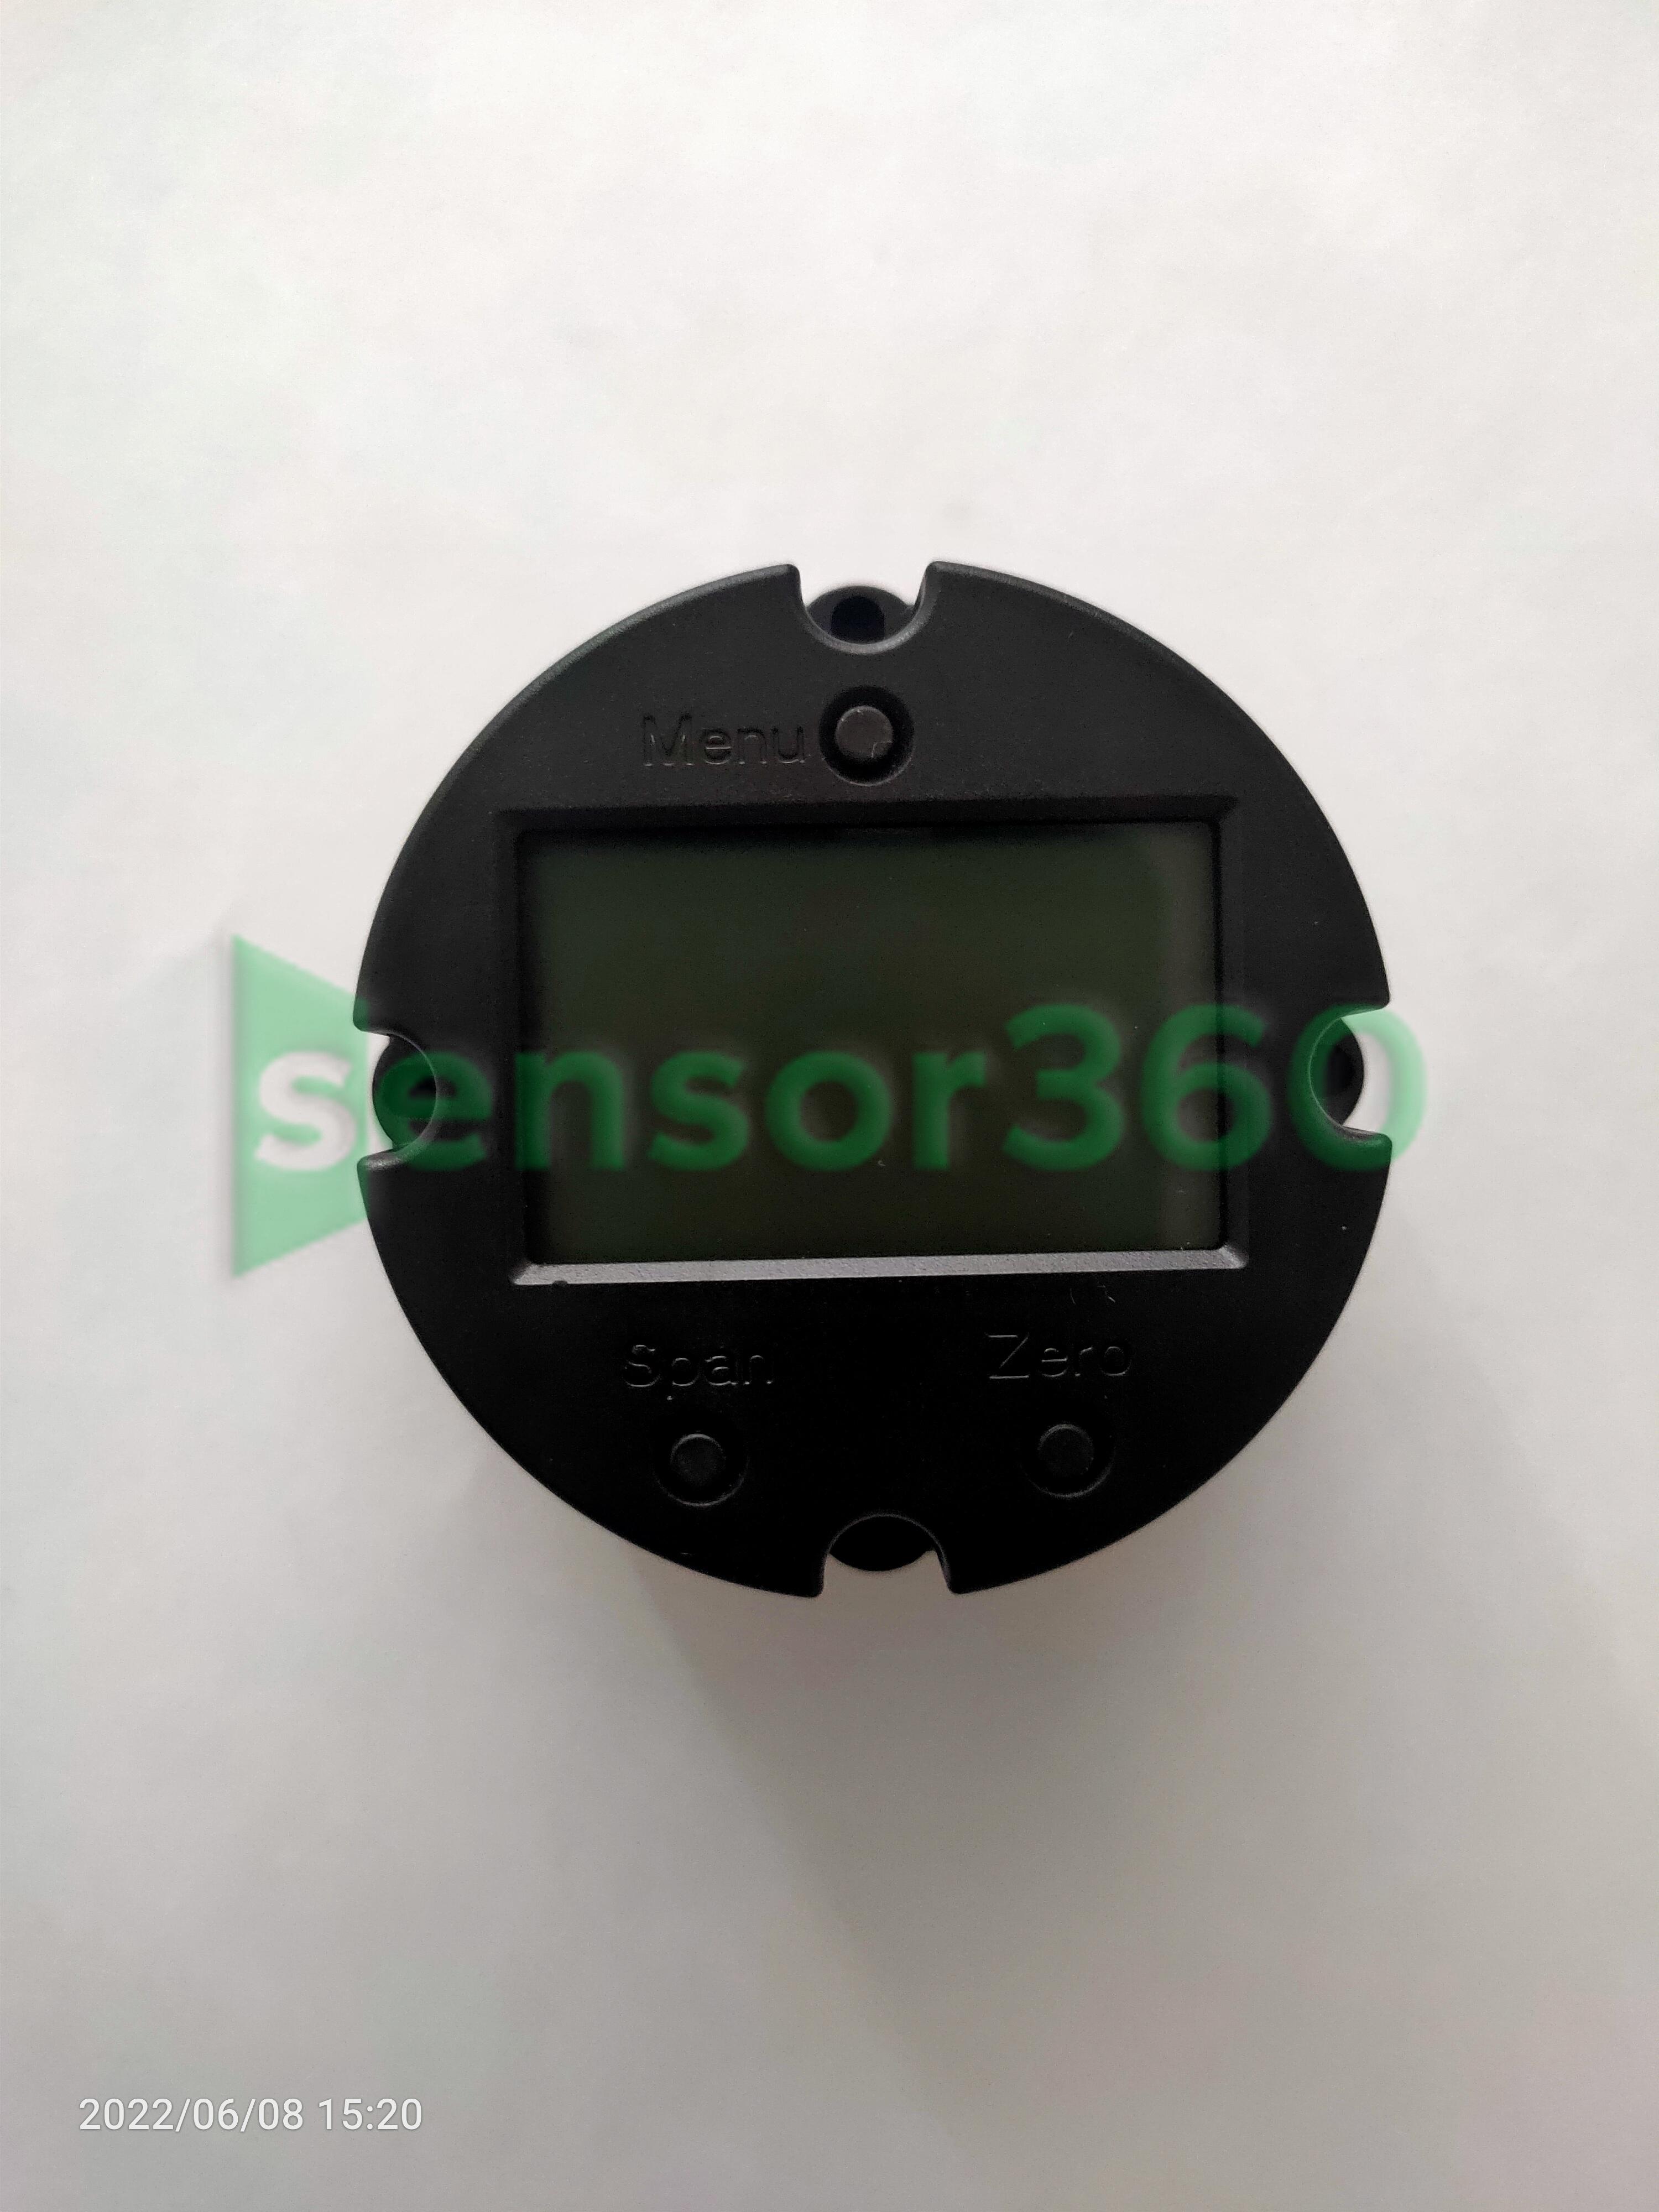 STD3051 sensor module